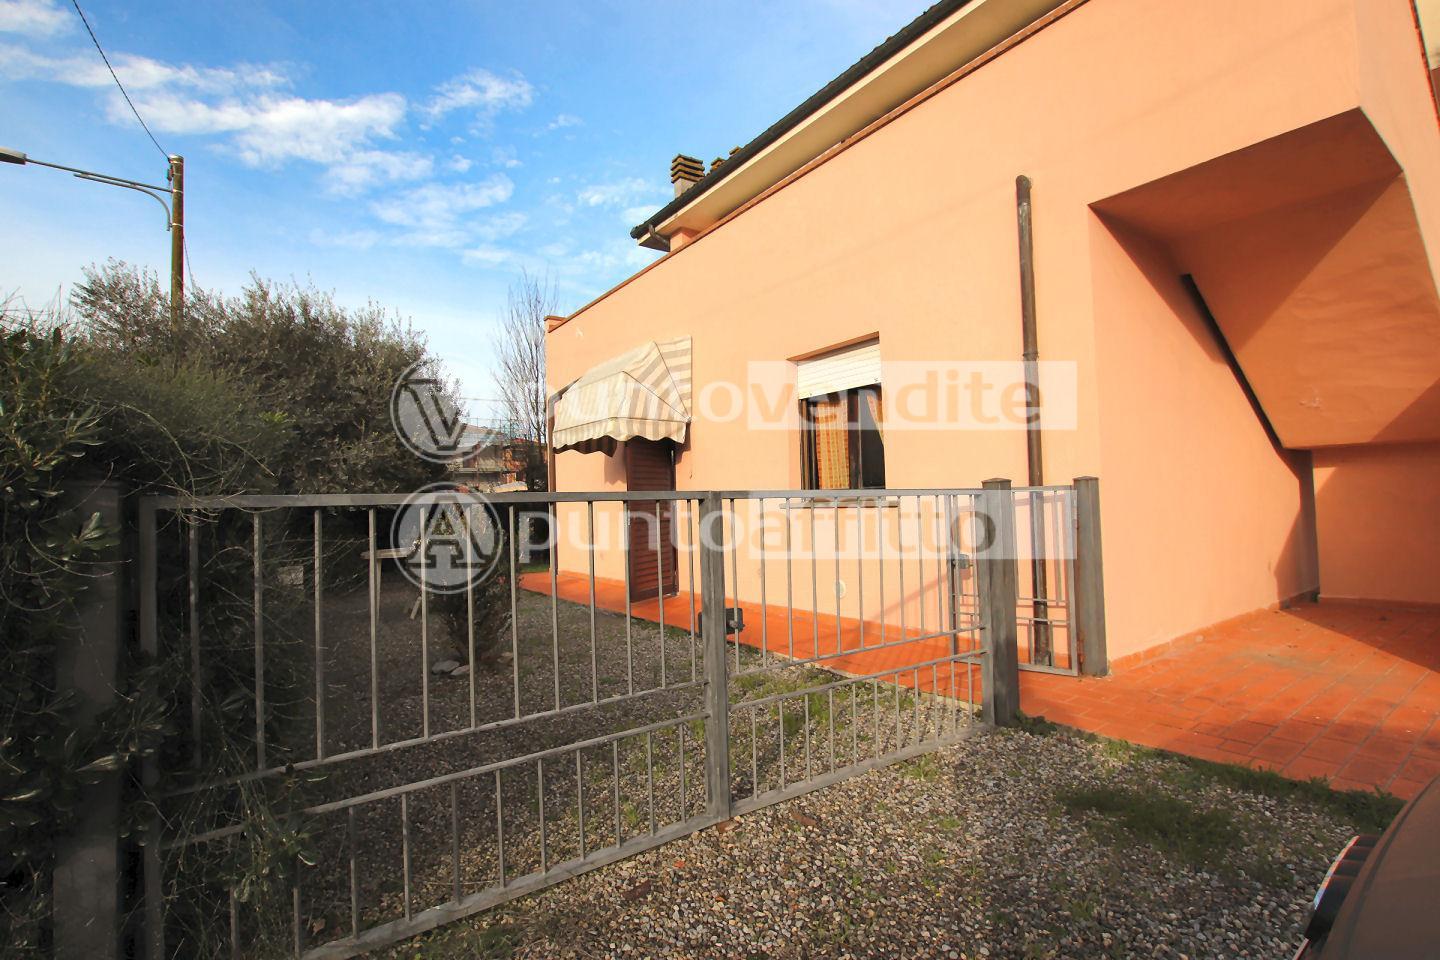 Appartamento in vendita a Lucca, 4 locali, prezzo € 158.000 | PortaleAgenzieImmobiliari.it